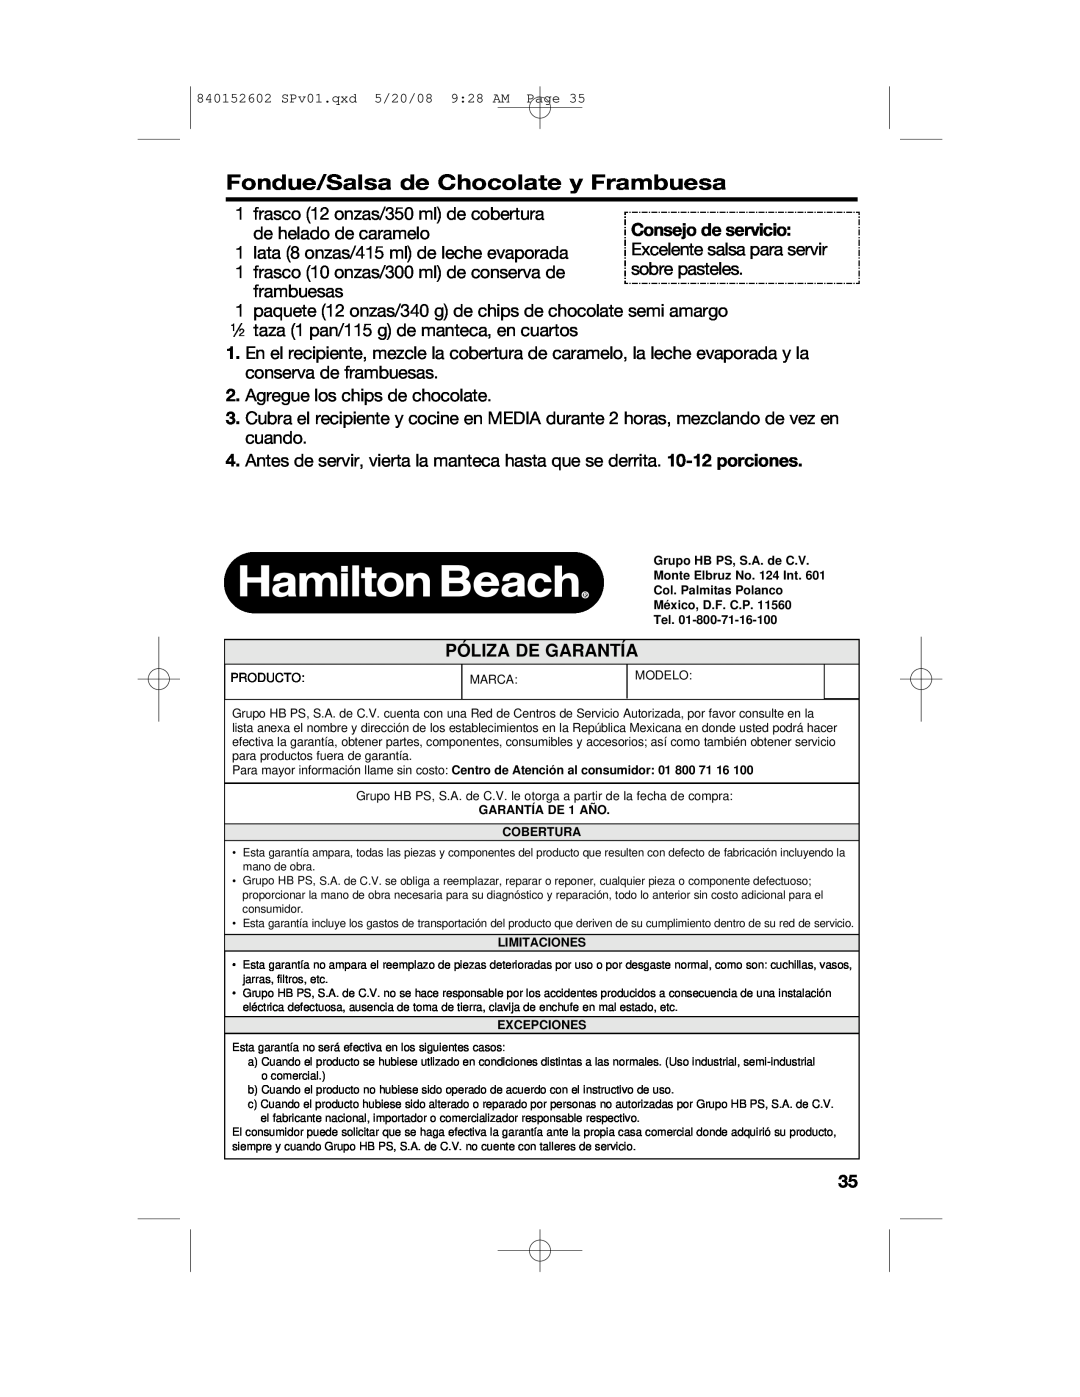 Hamilton Beach 840152602 manual Fondue/Salsa de Chocolate y Frambuesa, Póliza De Garantía 